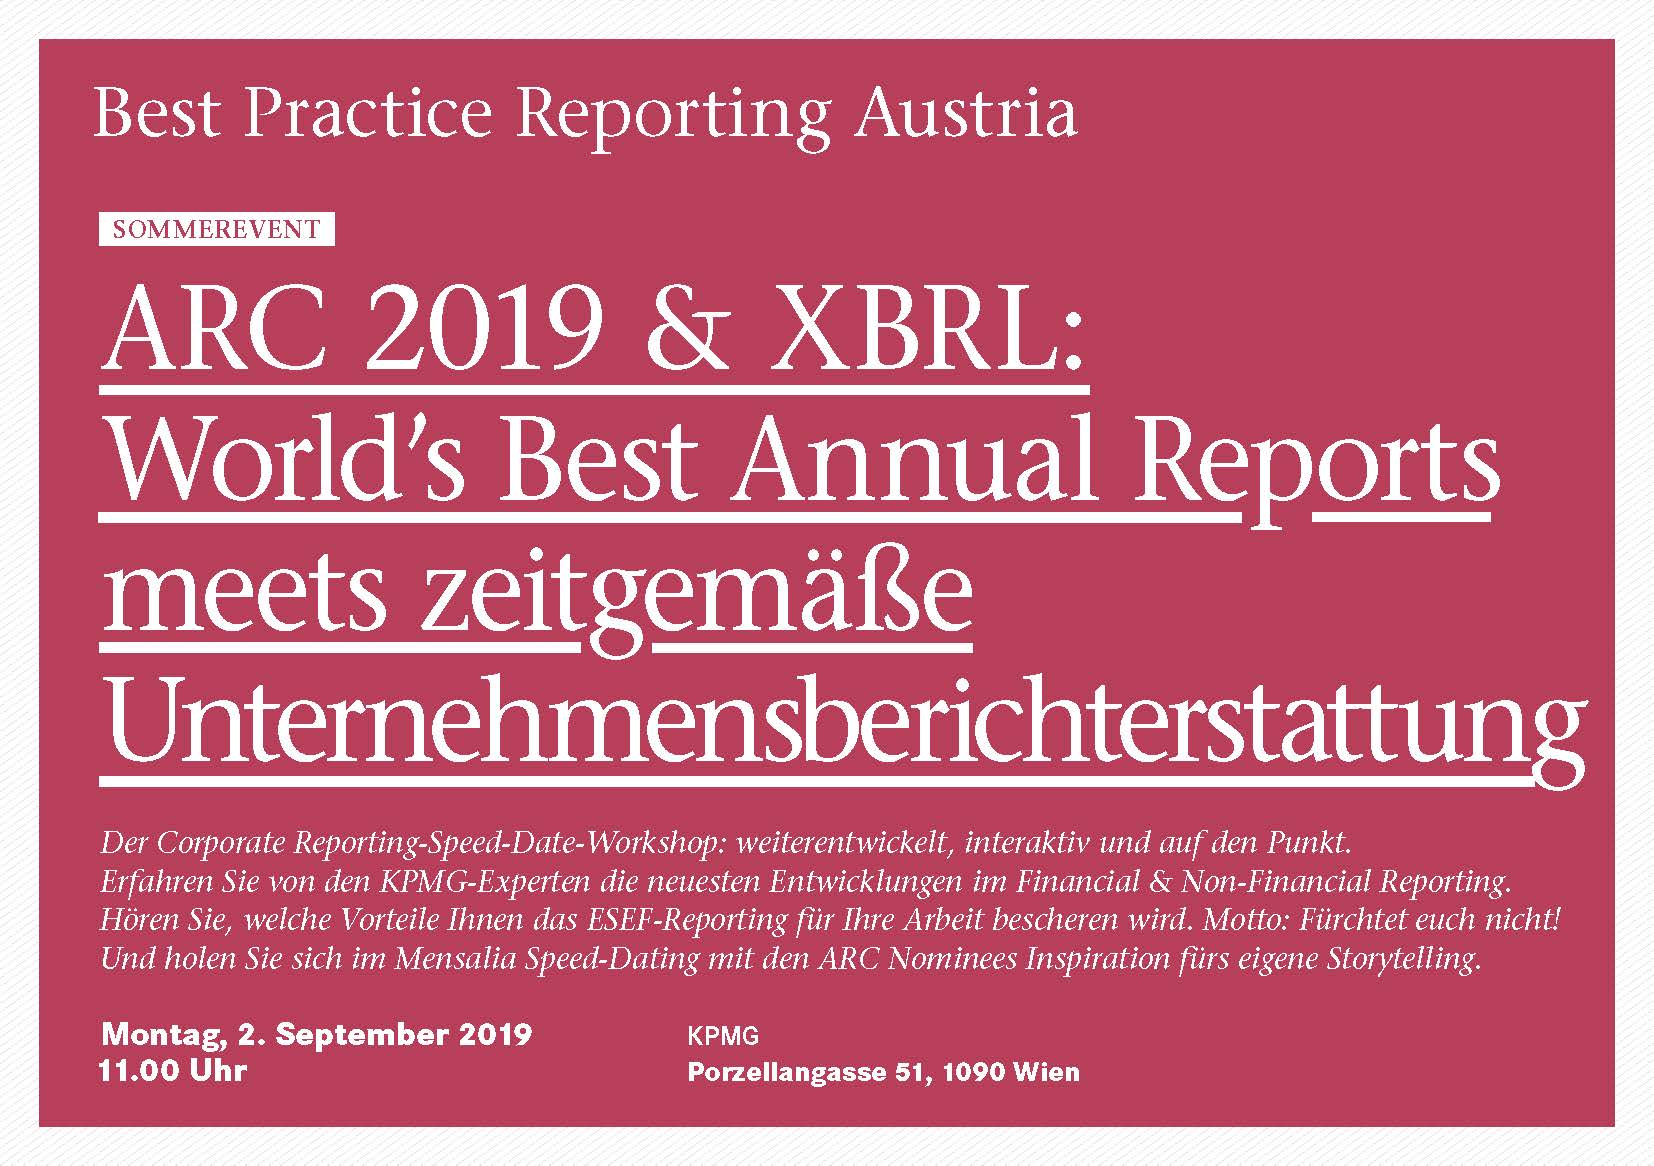 BPRA Veranstaltung ARC 2019 & XBRL: World`s Best Annual Reports meets zeitgemäße Unternehmensberichterstattung